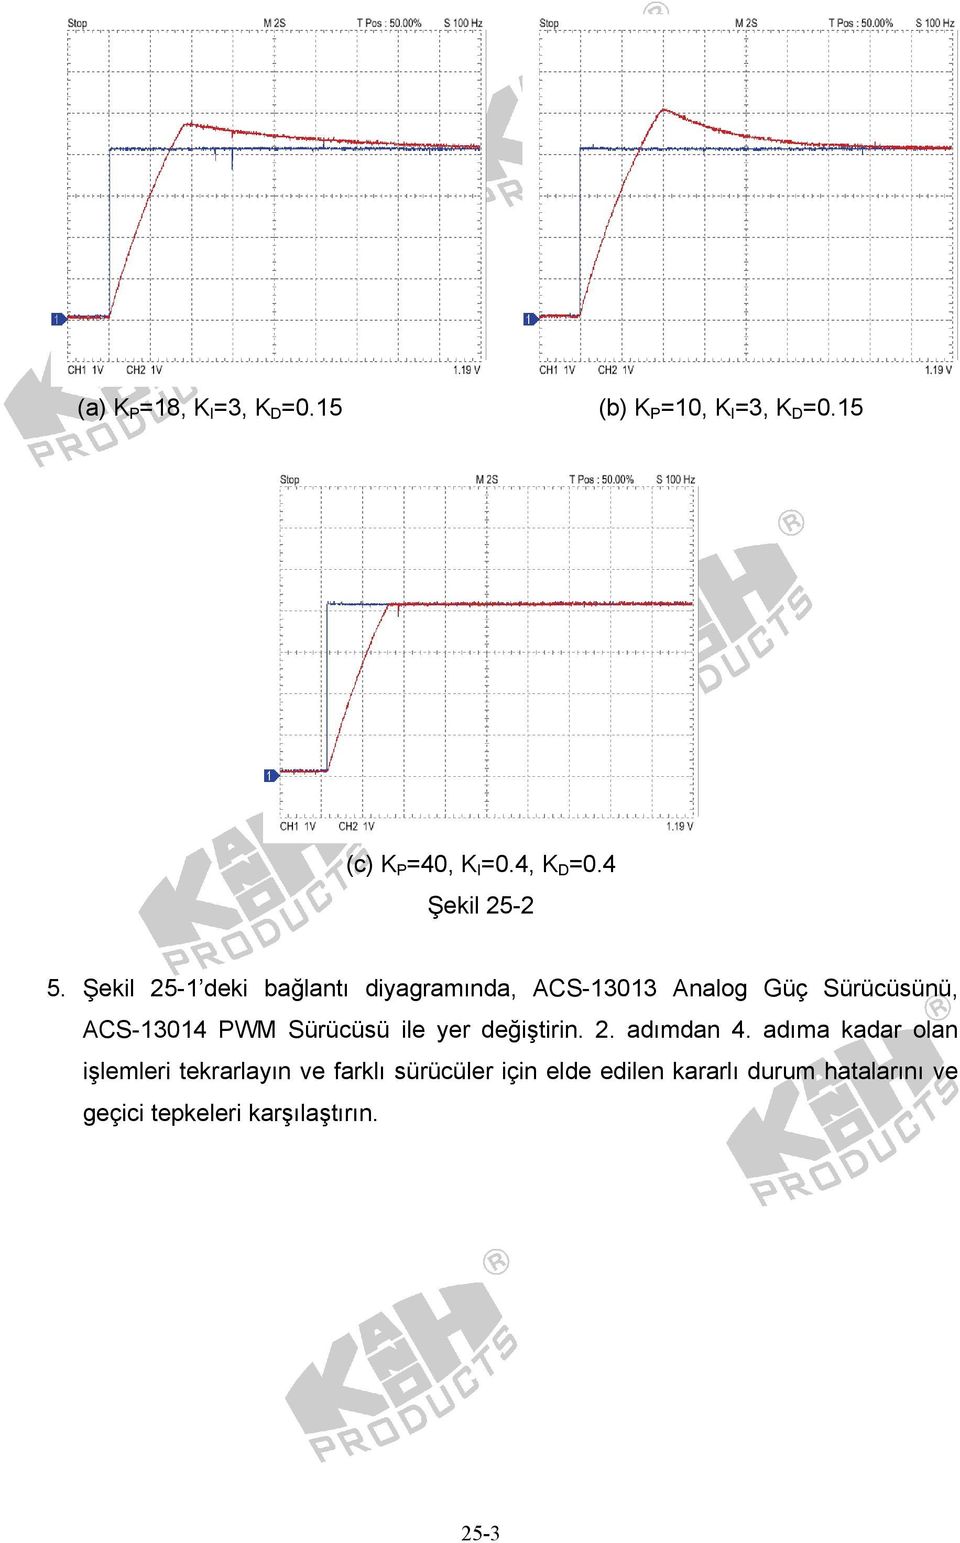 Şekil 25-1 eki bağlantı iyagramına, ACS-13013 Analog Güç Sürücüsünü, ACS-13014 PWM